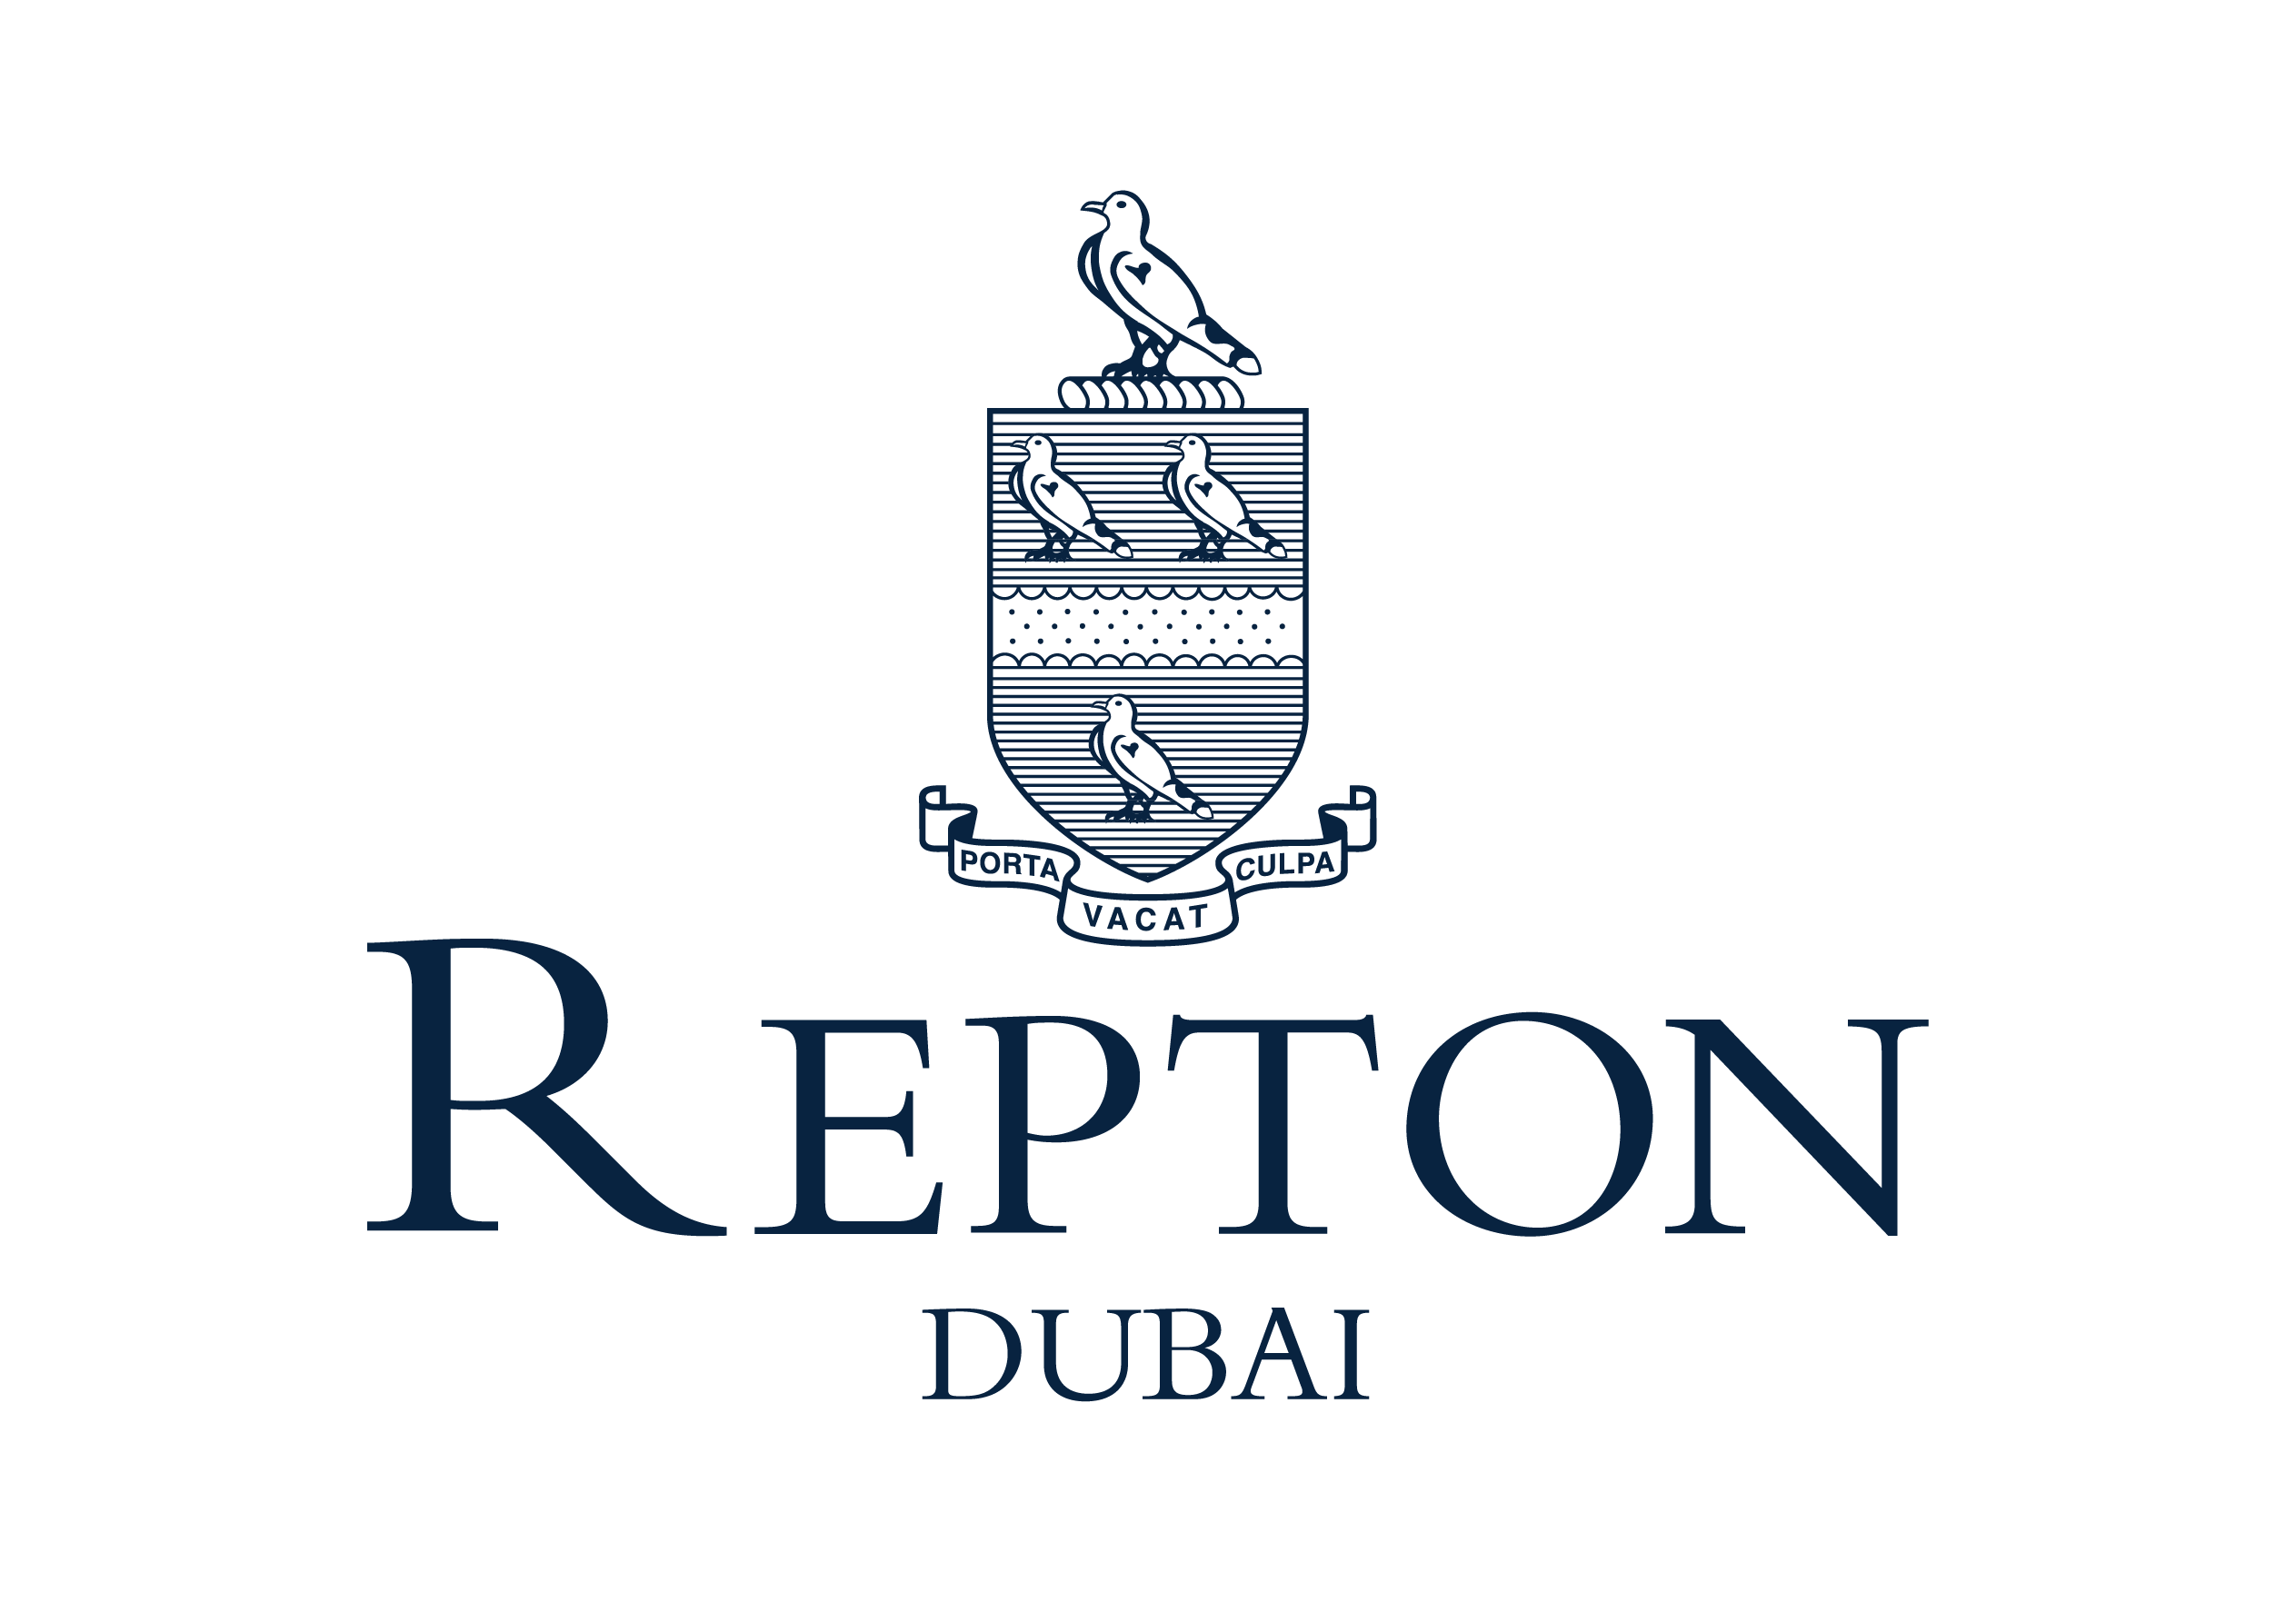 Repton Dubai, Dubai, UAE Cognita Schools